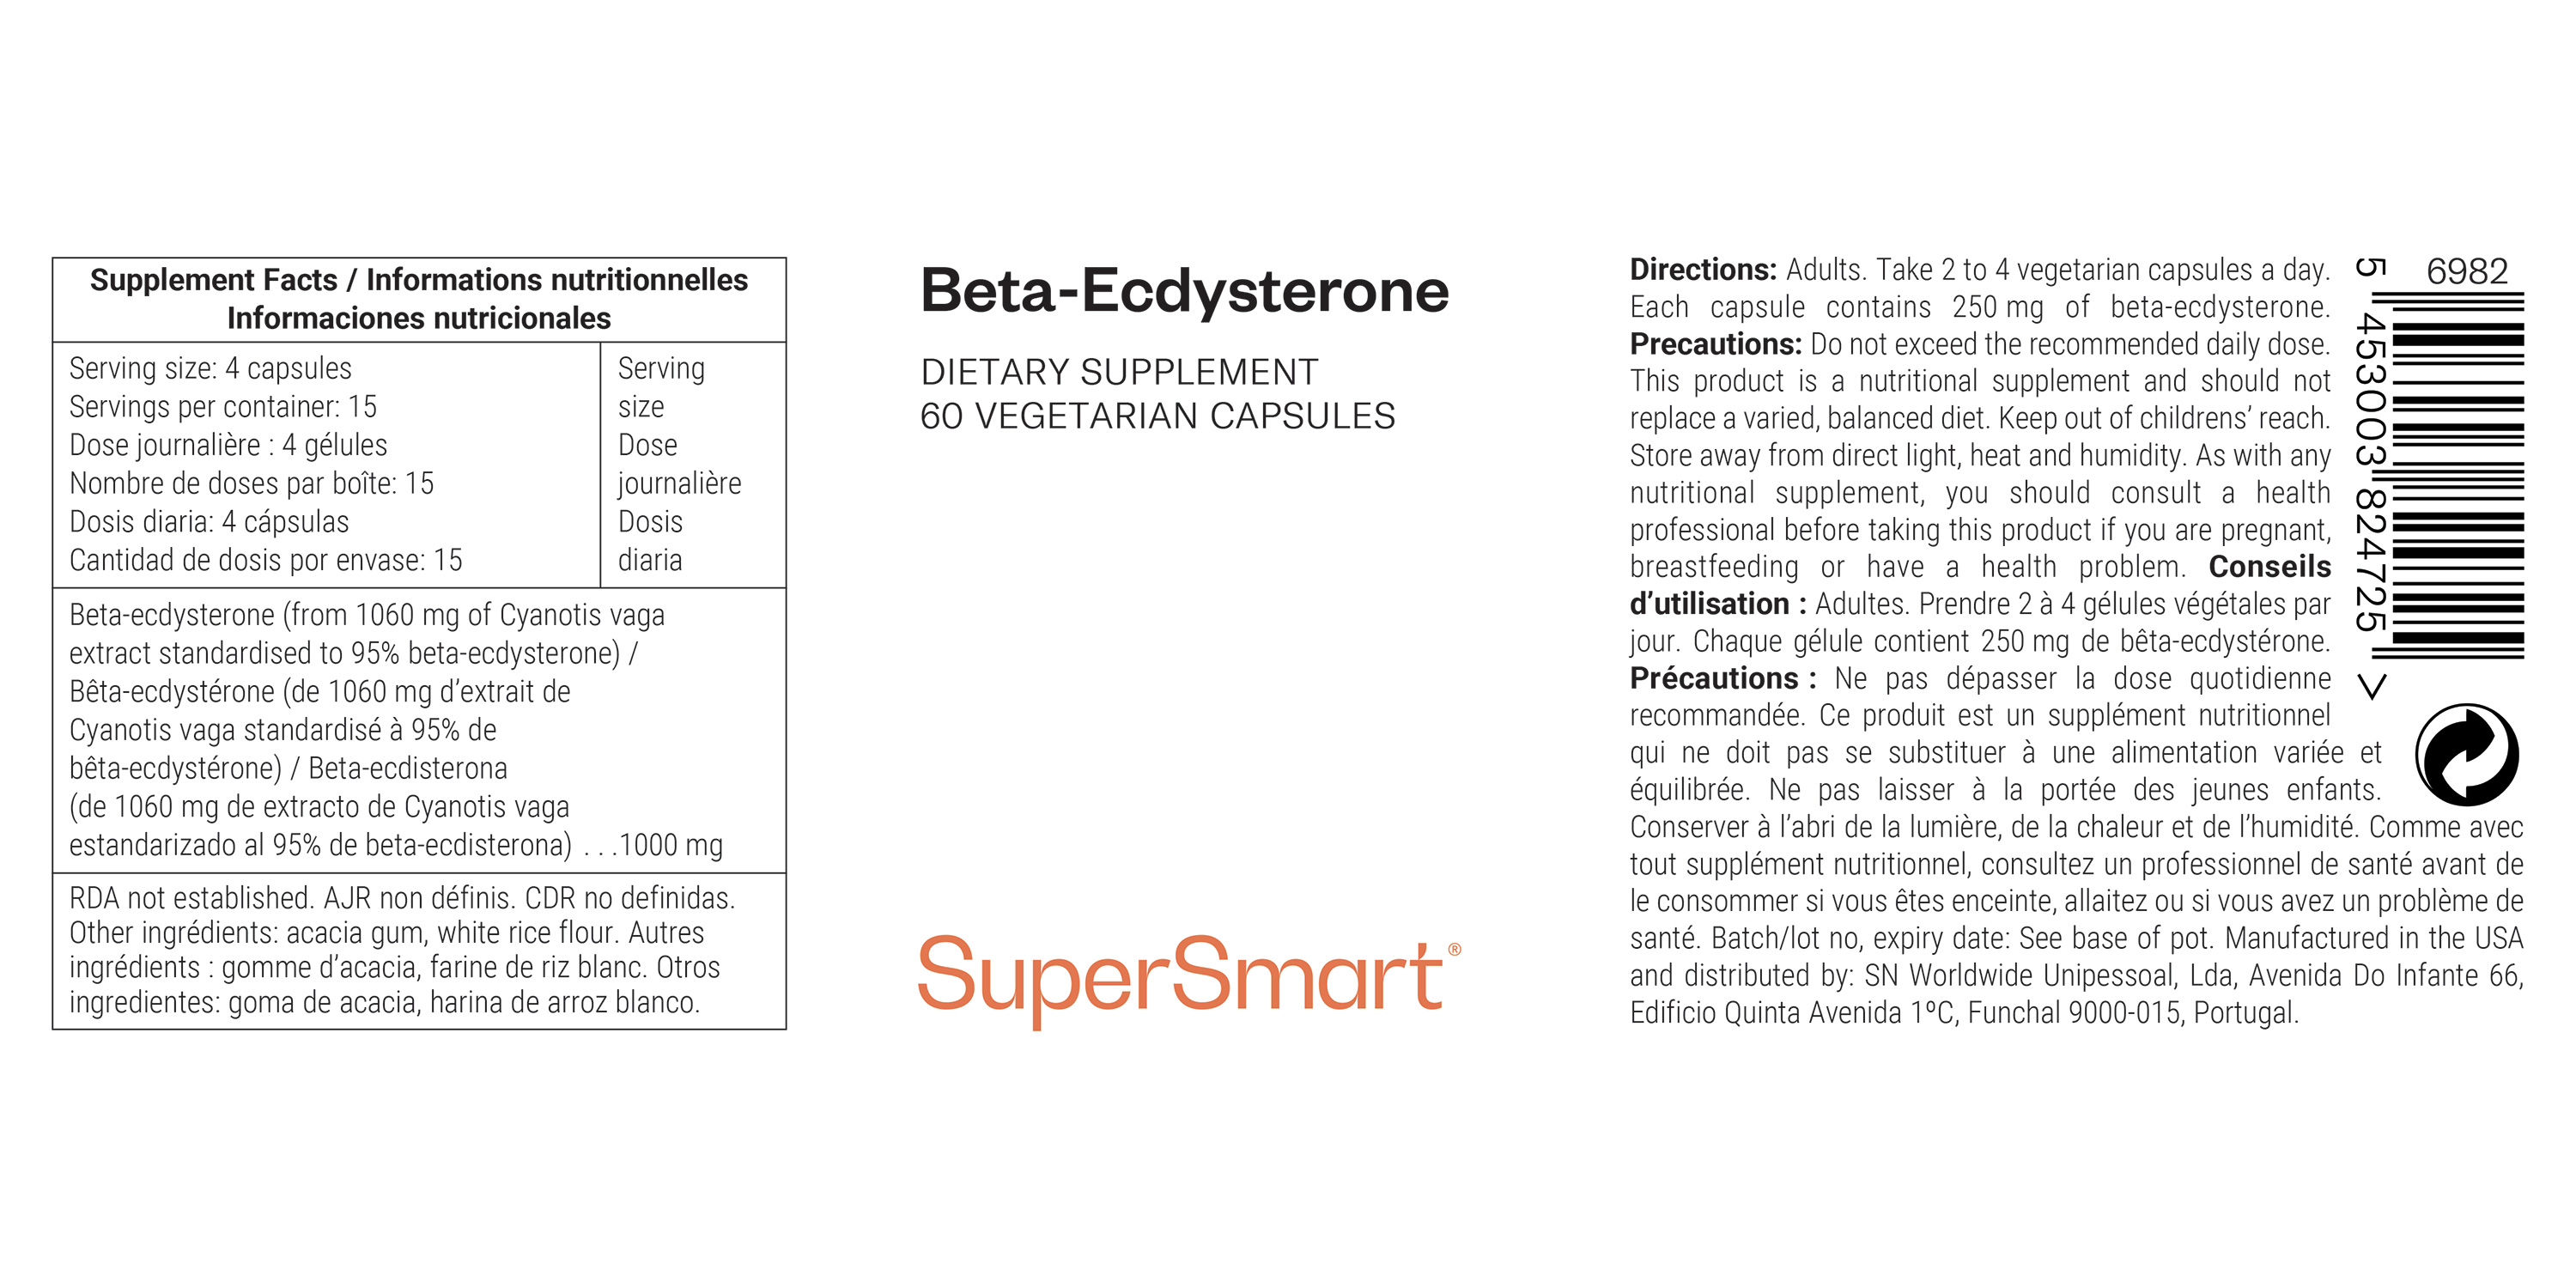 Beta-Ecdysterone Supplement